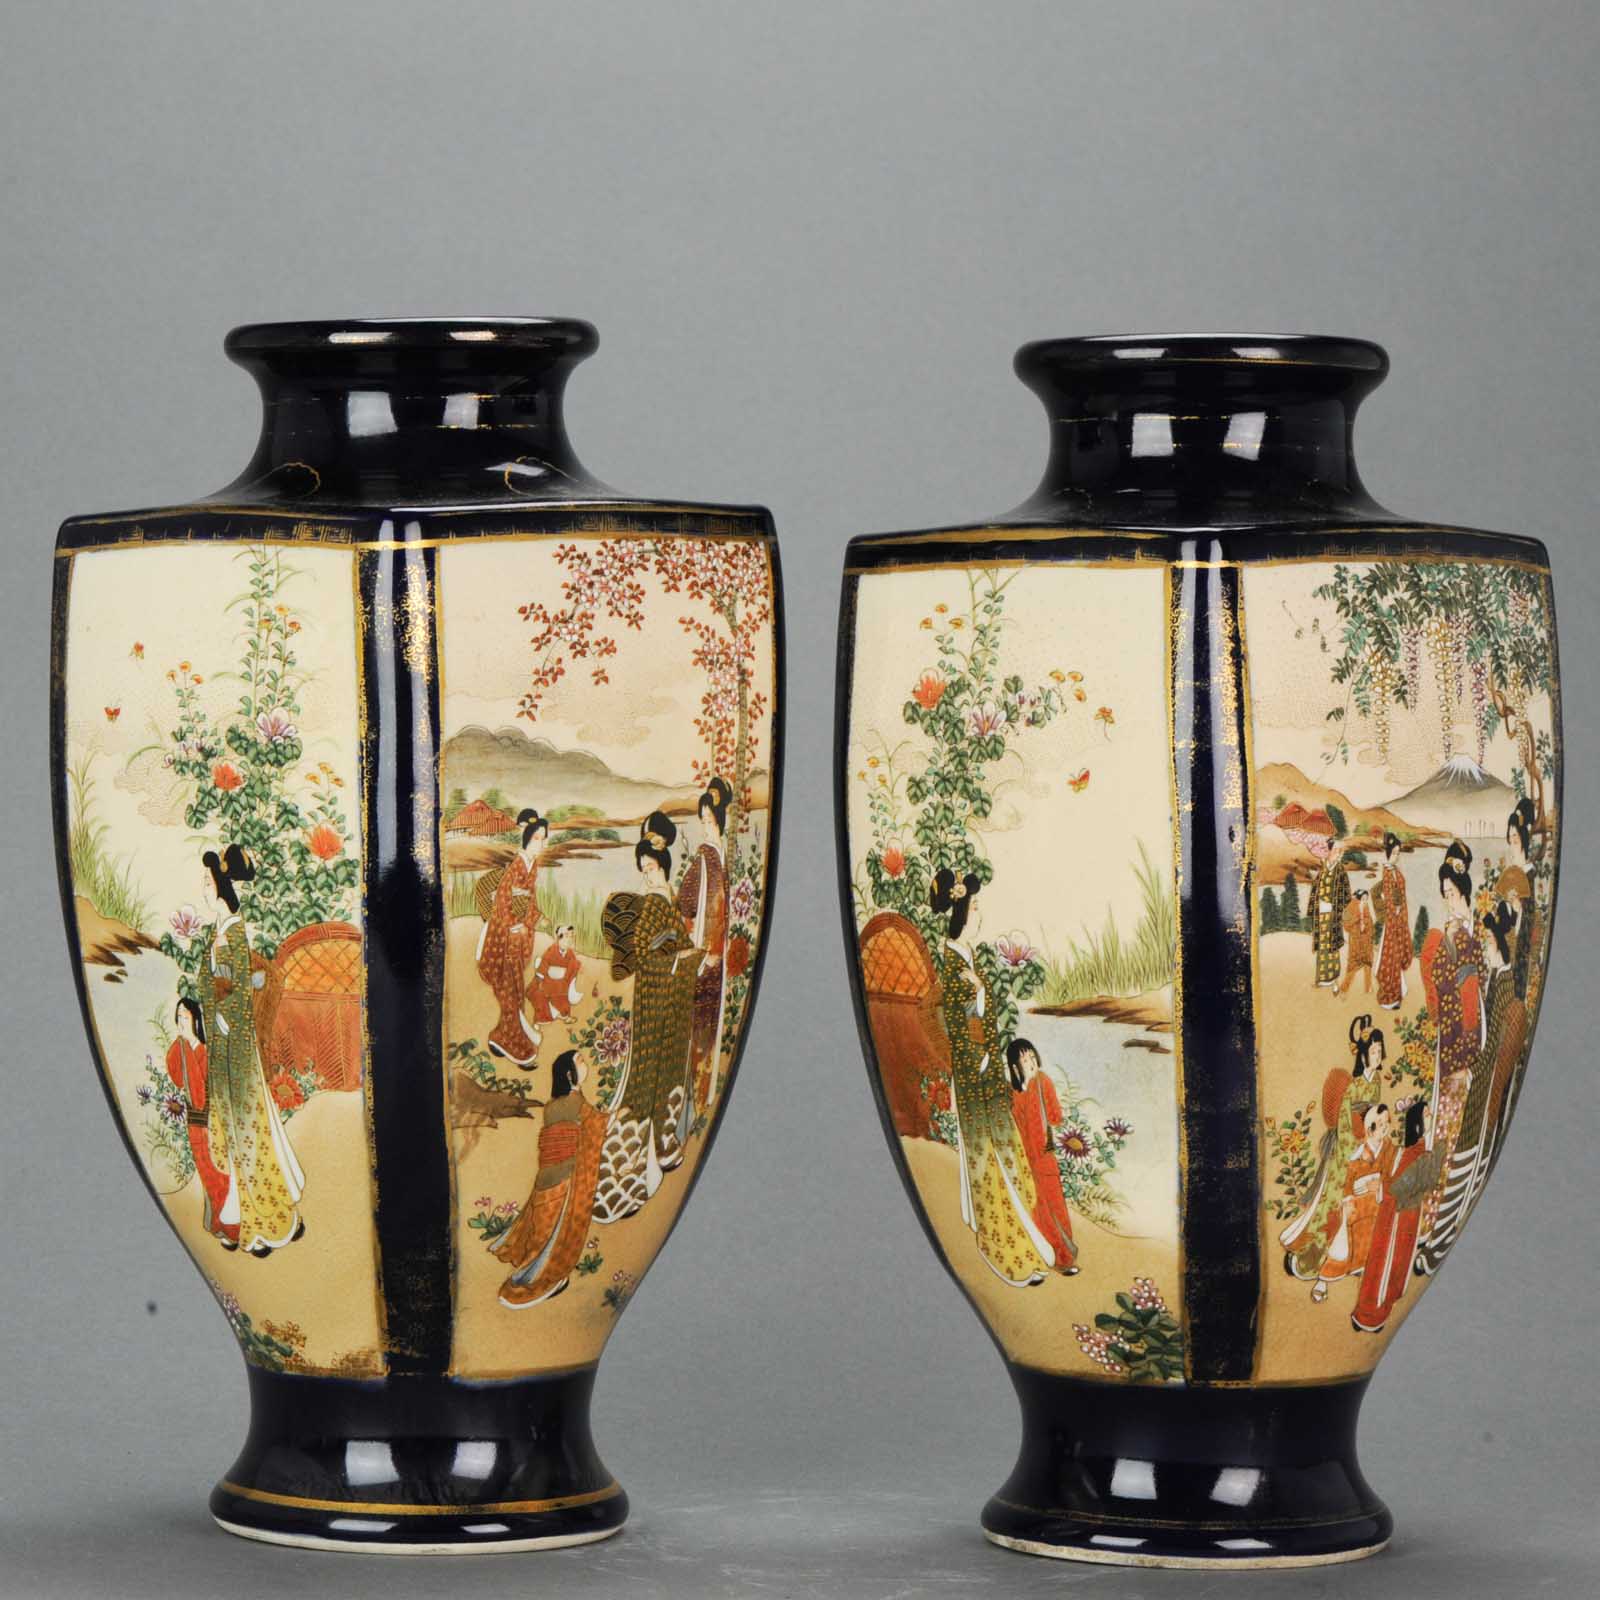 Antique Early 20th C Japanese Satsuma Vase Warriors Figures Decorated Marked Base